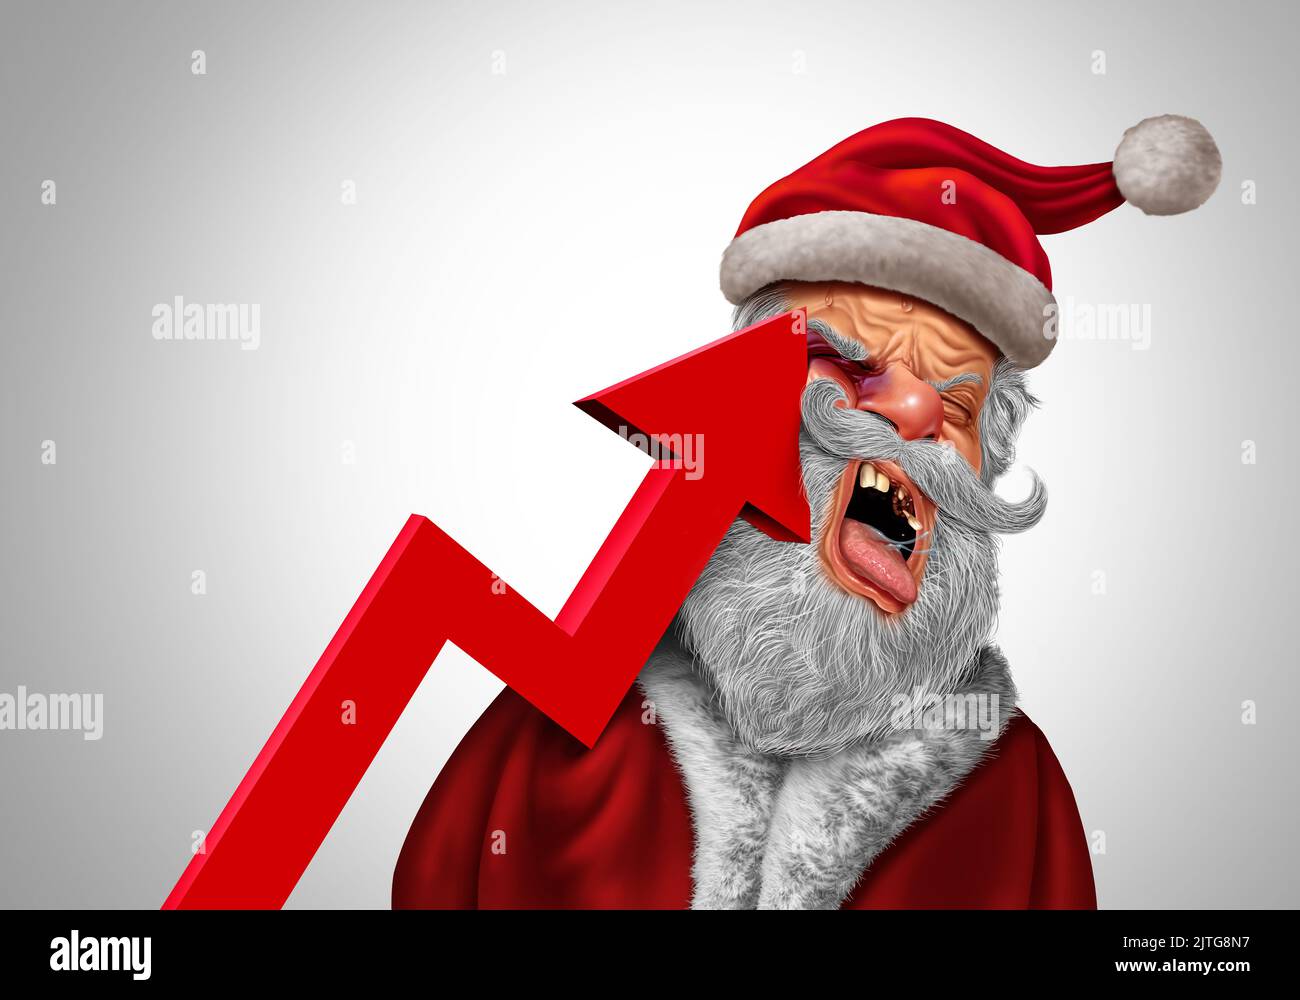 Noël inflation pain concept comme le Père Noël étant durement frappé par une flèche de graphique financier à tendance ascendante représentant la hausse des prix à la consommation Banque D'Images